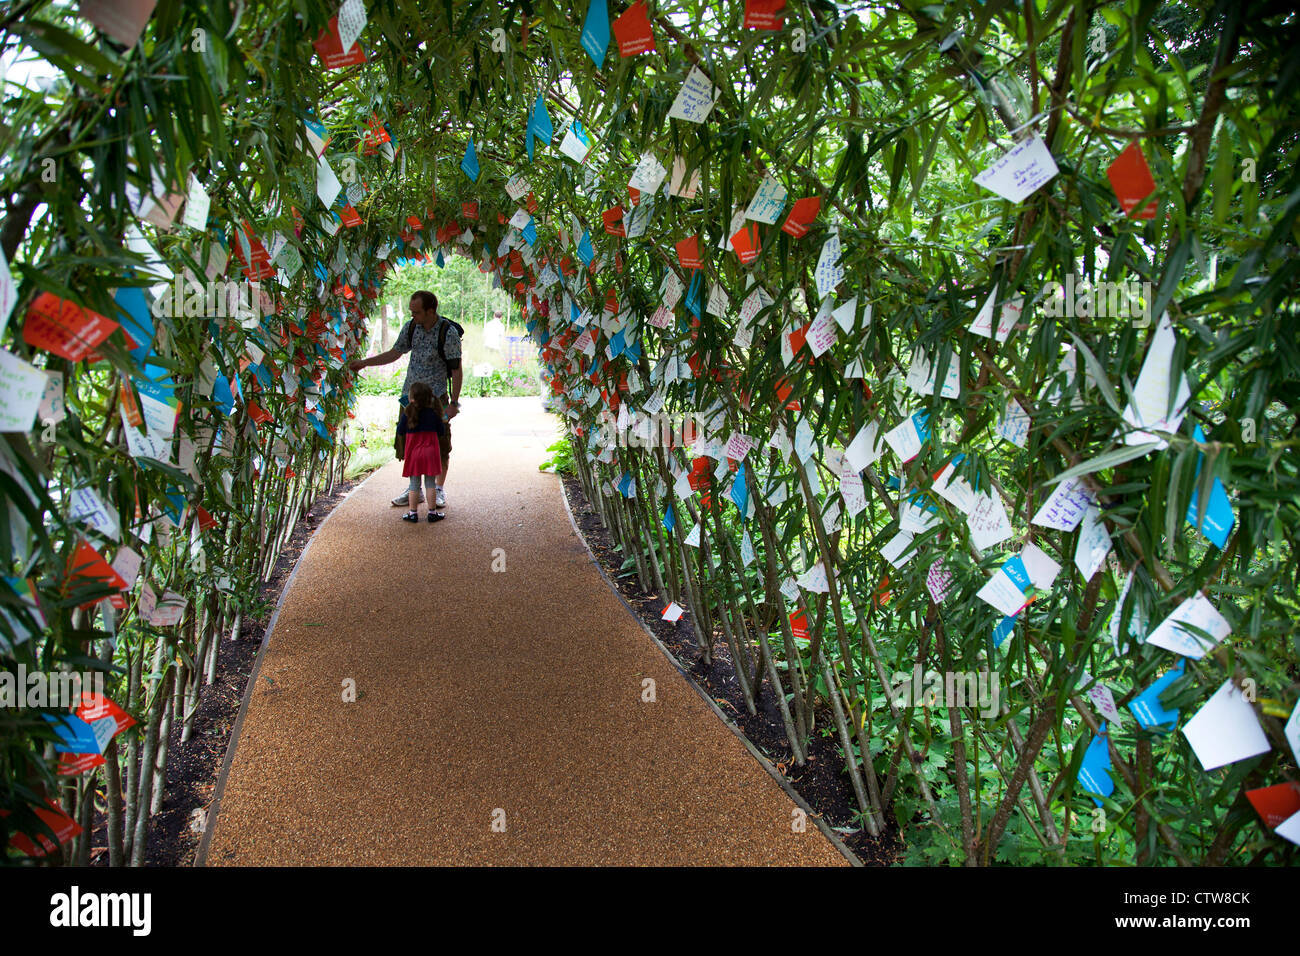 London 2012 Olympic Park in Stratford. Unter einem Torbogen in einem der Gärten, Tausende von Nachrichten von gutem Willen und viel Glück. Stockfoto